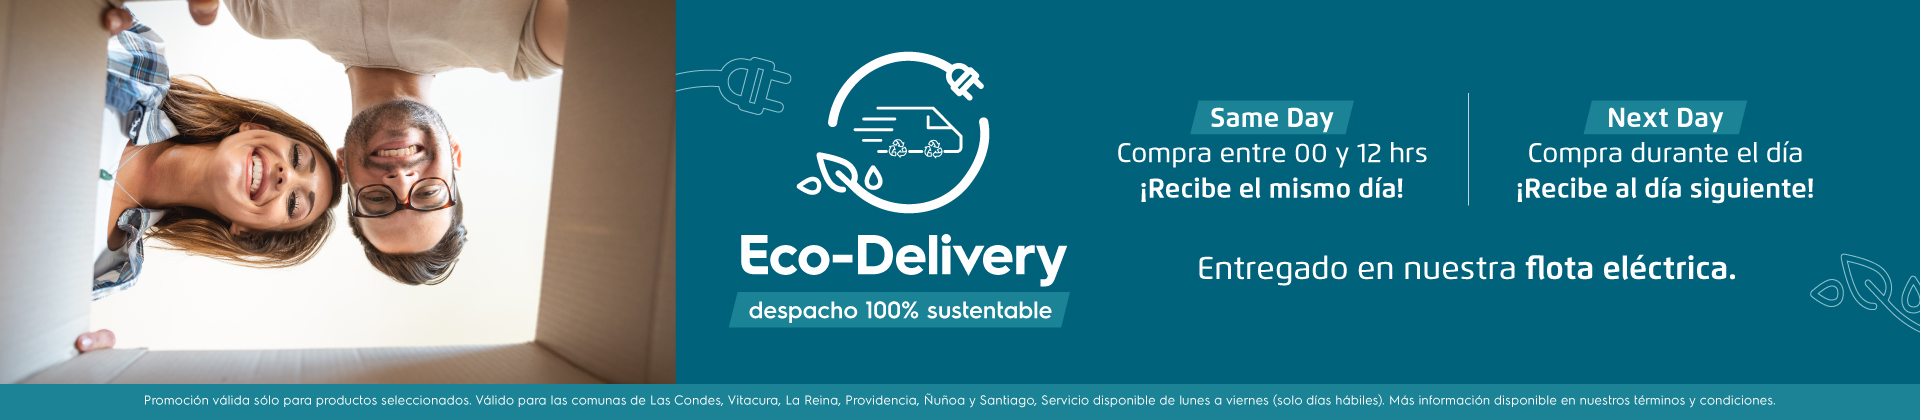 Same Dat Eco-Delivery Recibe el mismo dia entregado en nuestra flota eléctrica